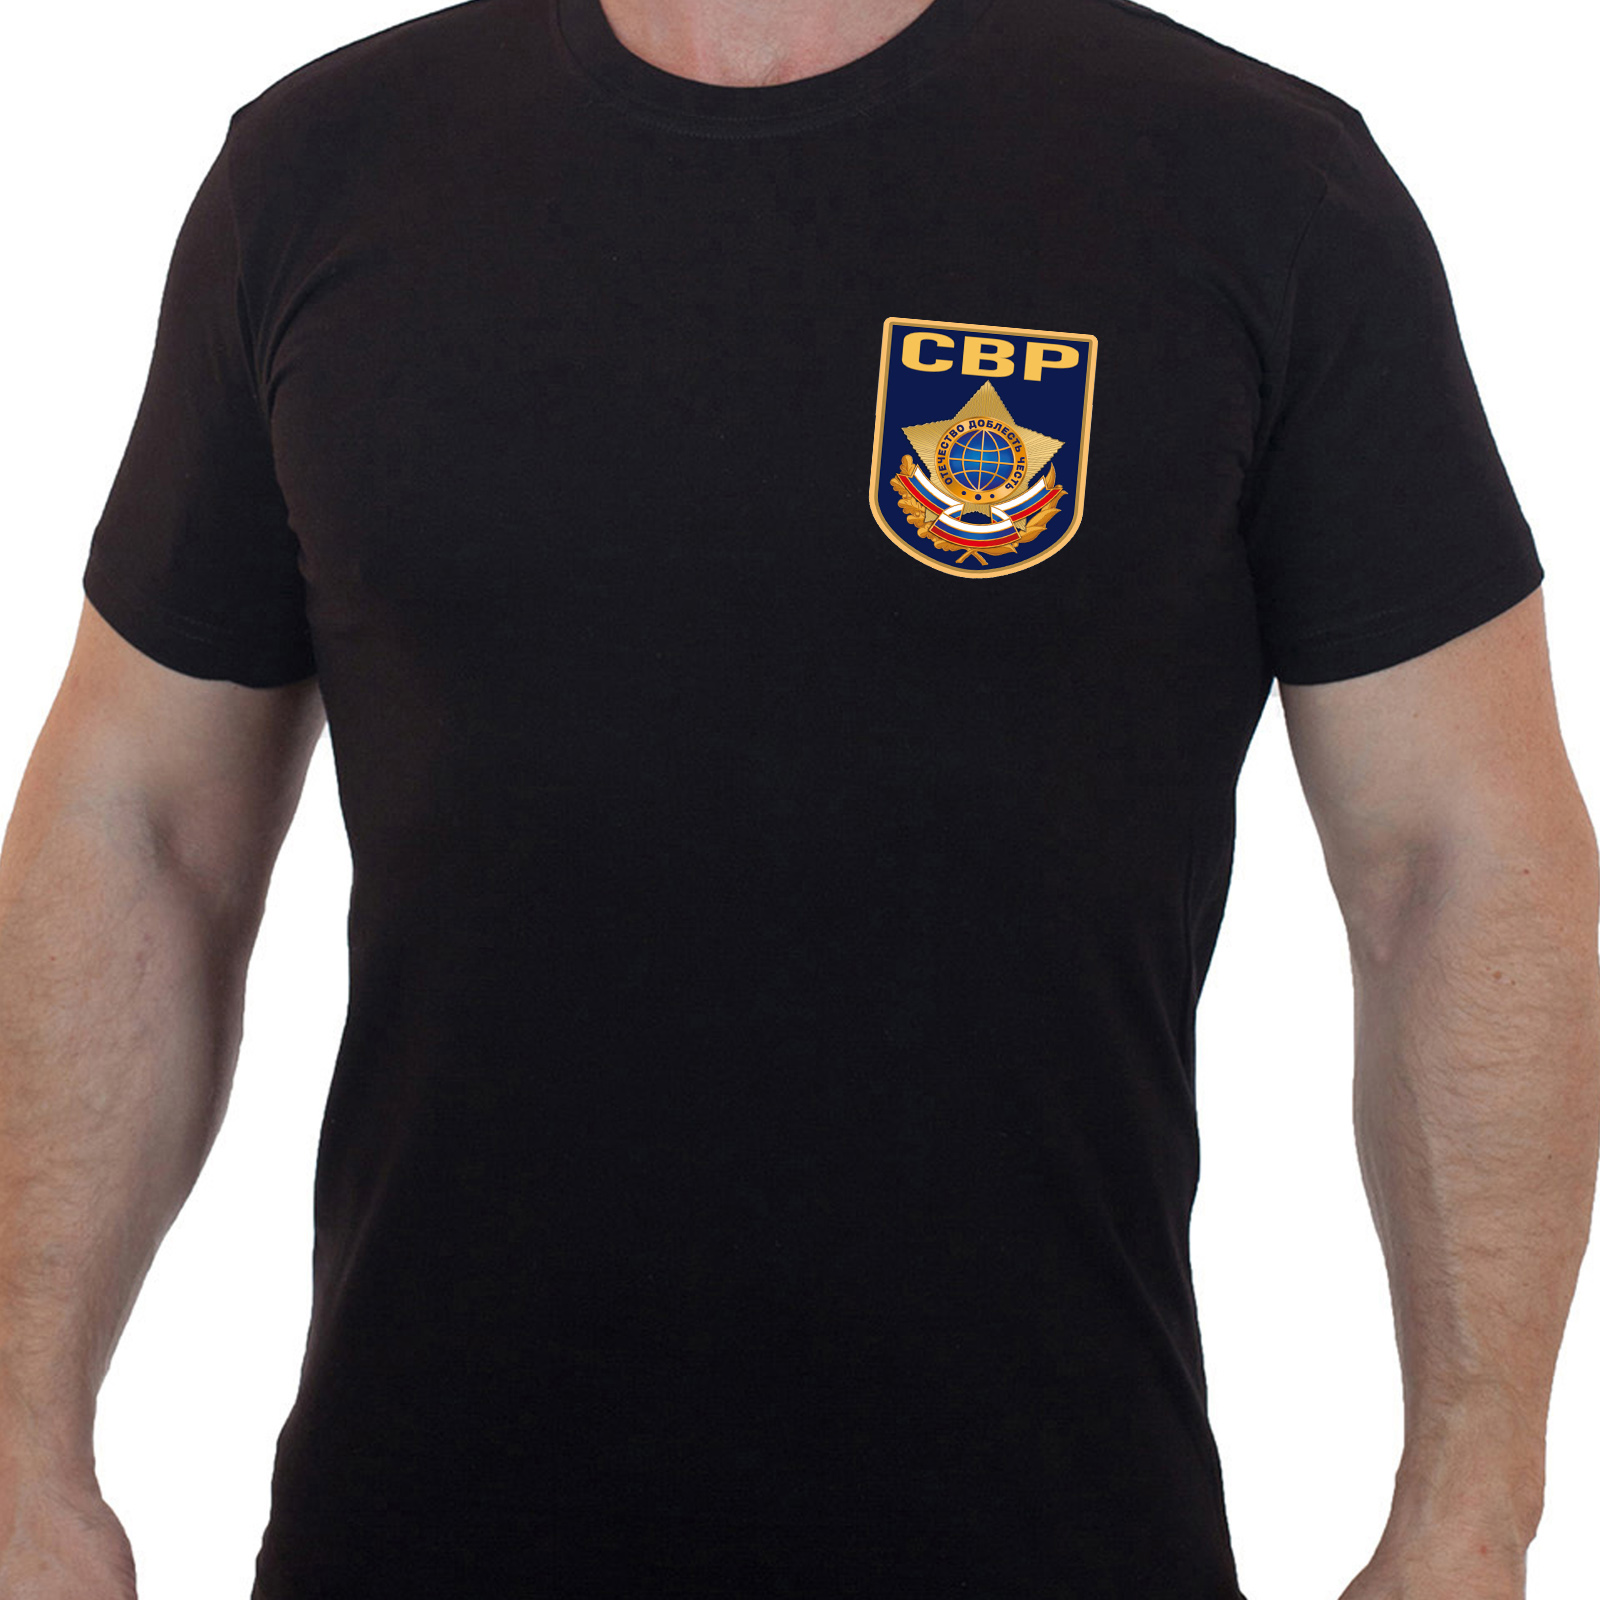 Чёрная футболка "Служба внешней разведки"